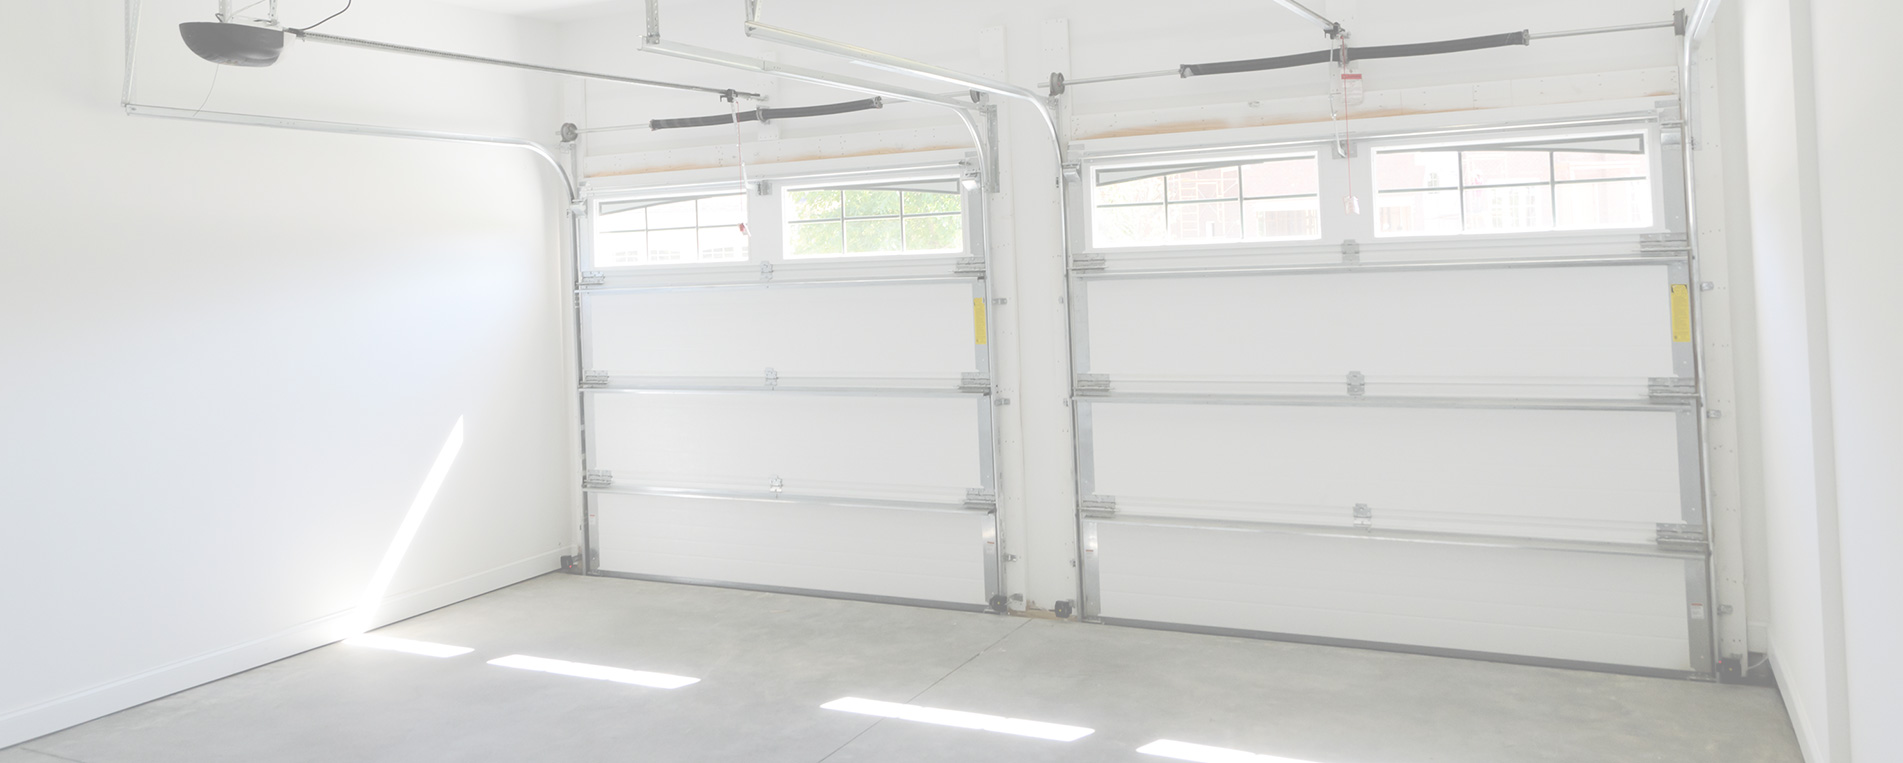 Spring Garage Doors